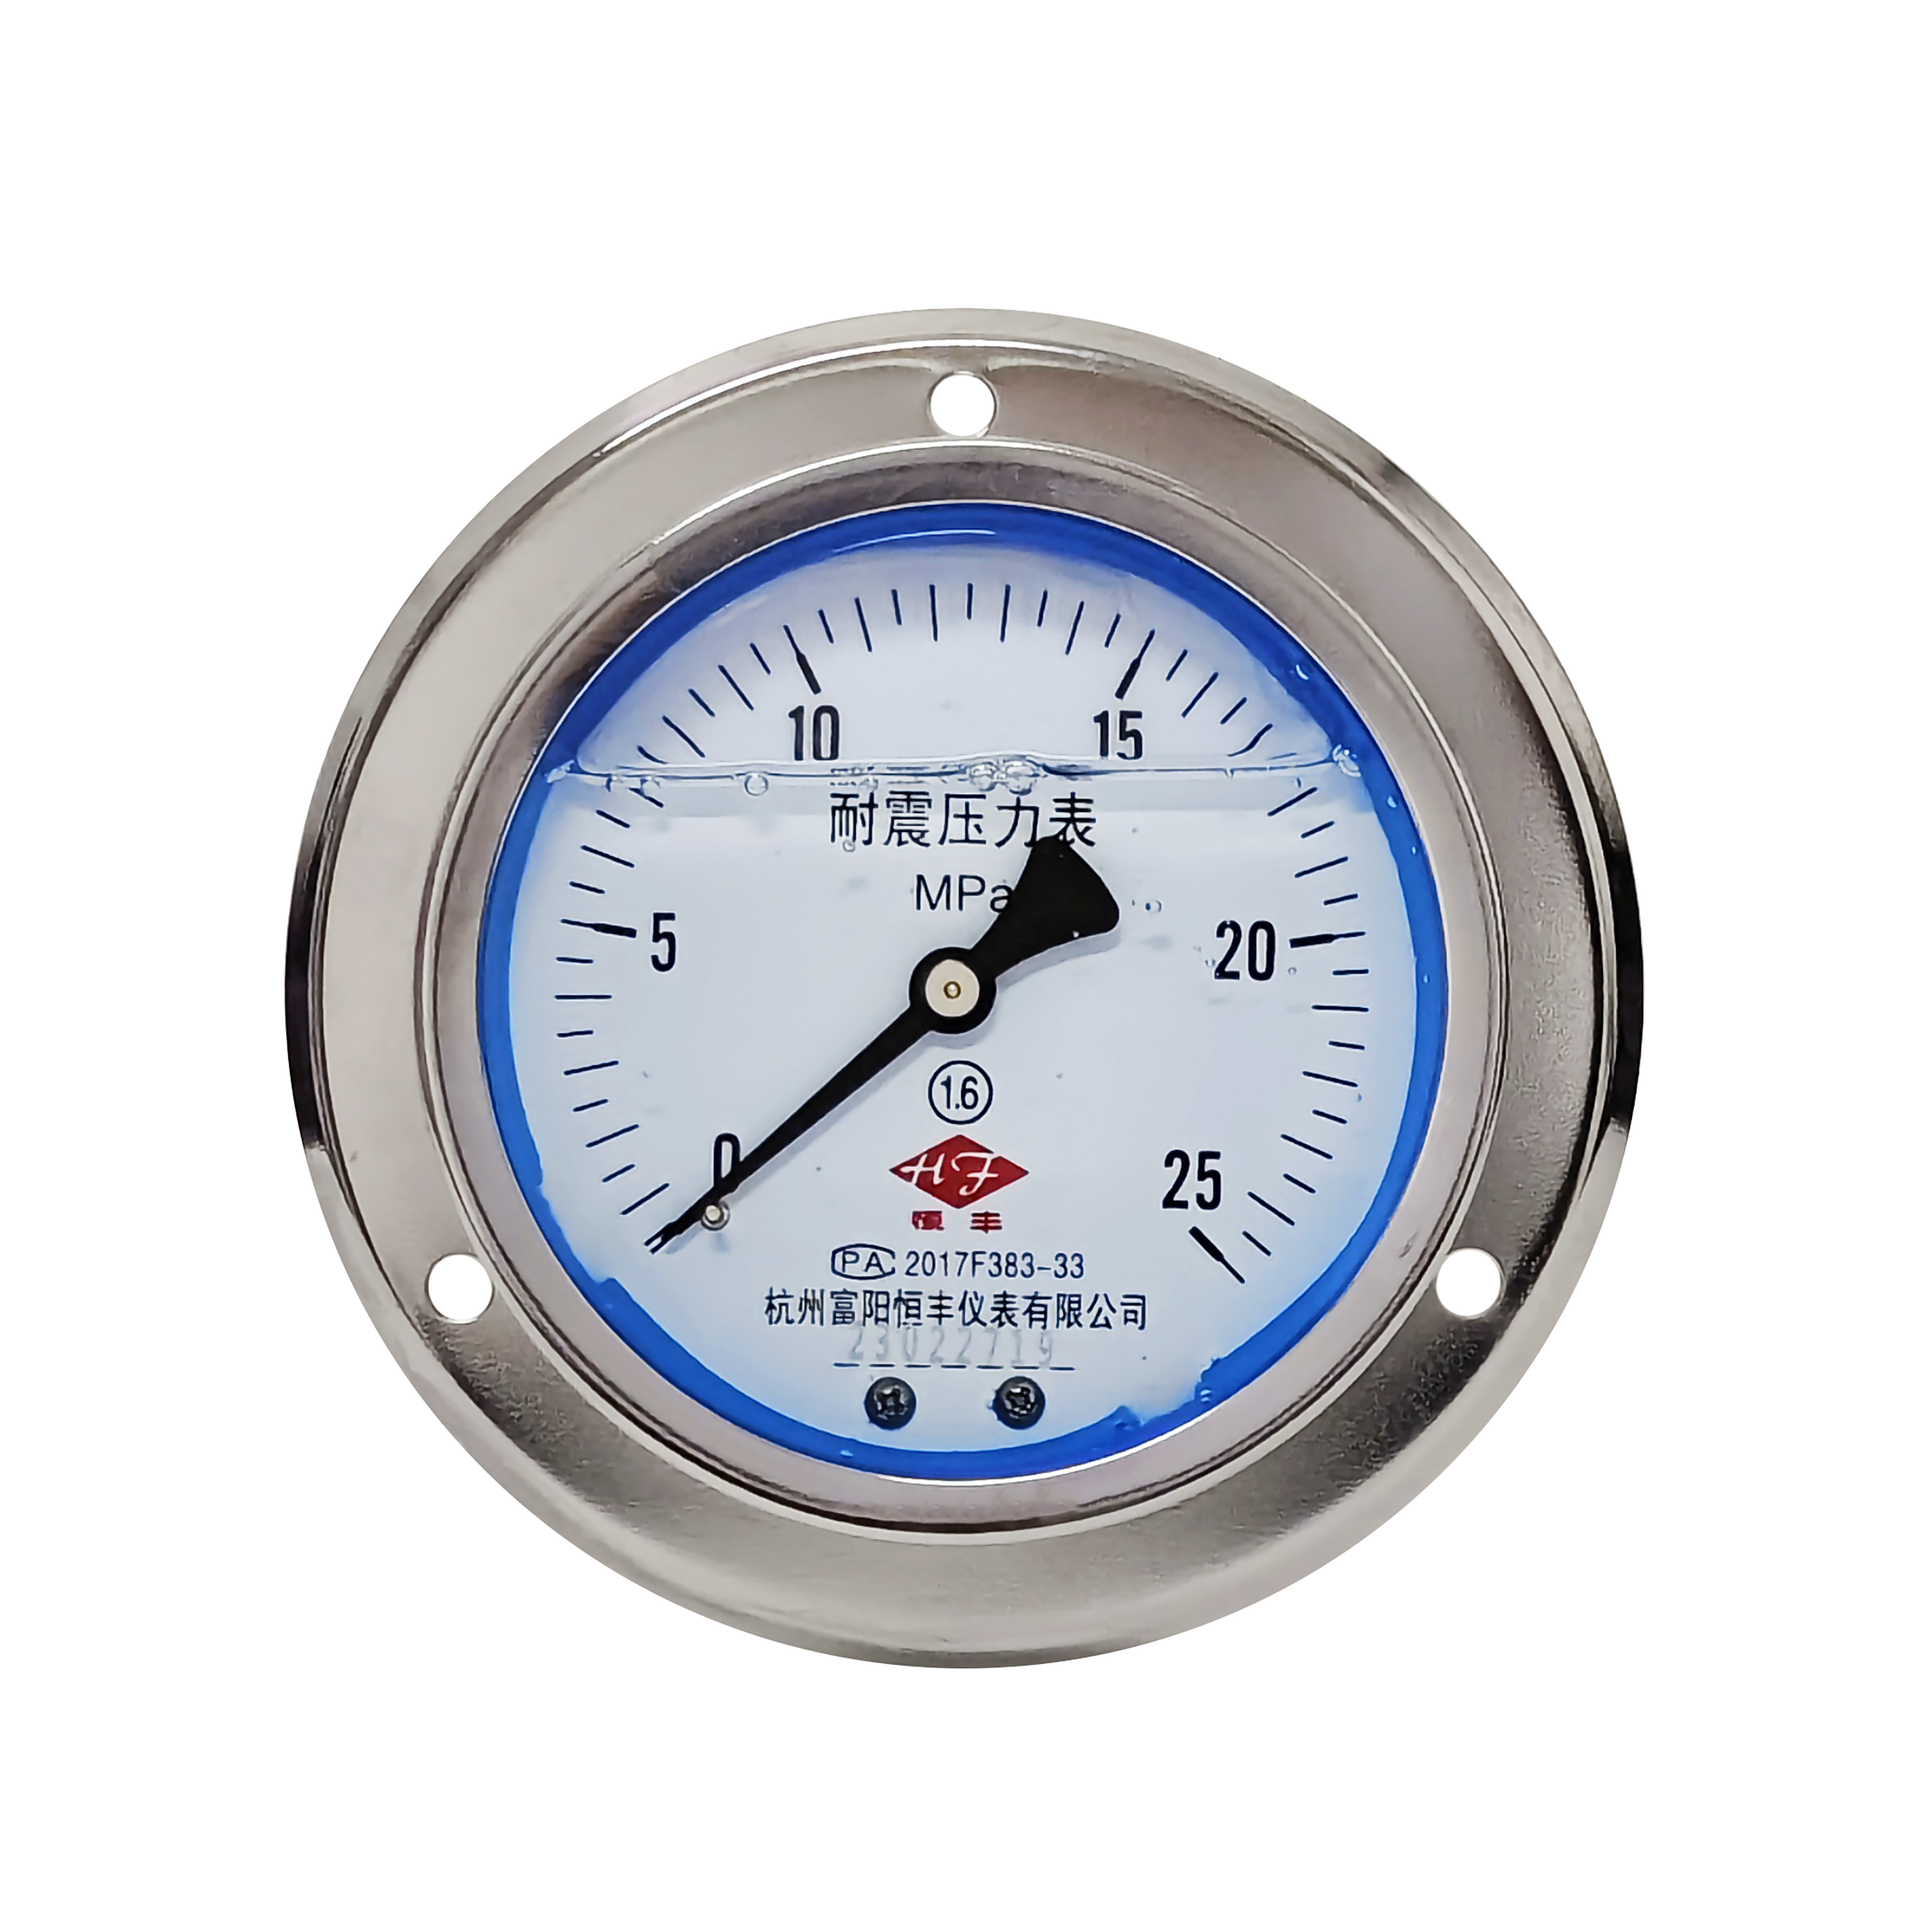 YN100ZT shock-proof pressure gauge